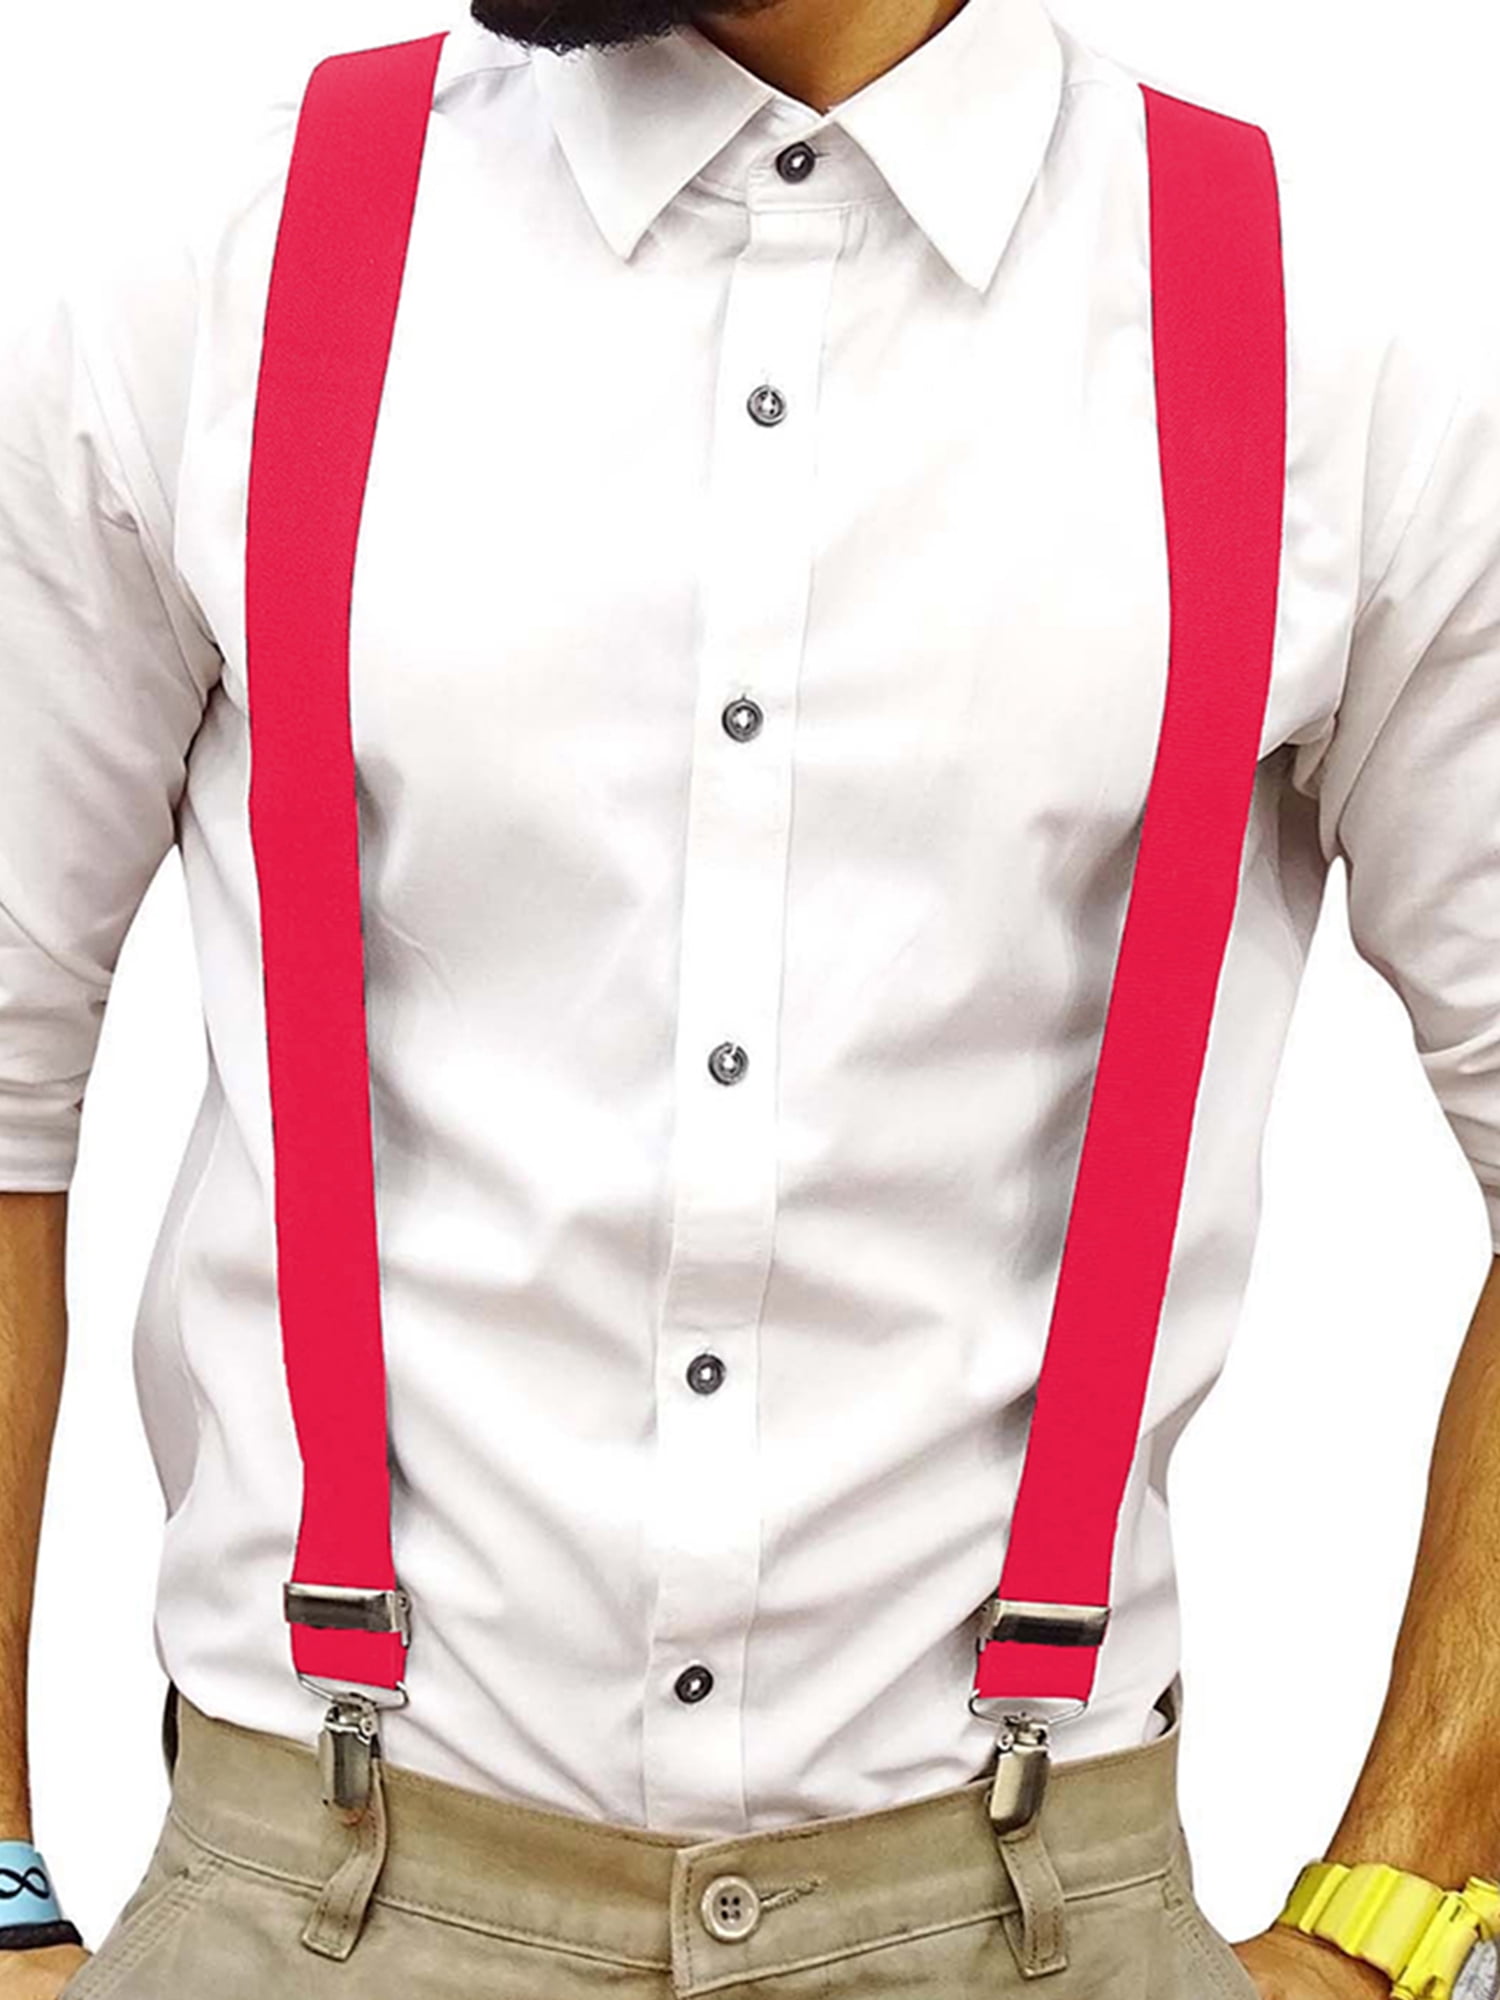 Ausukler Braces for Men Trousers with 3 Swivel Hooks India | Ubuy